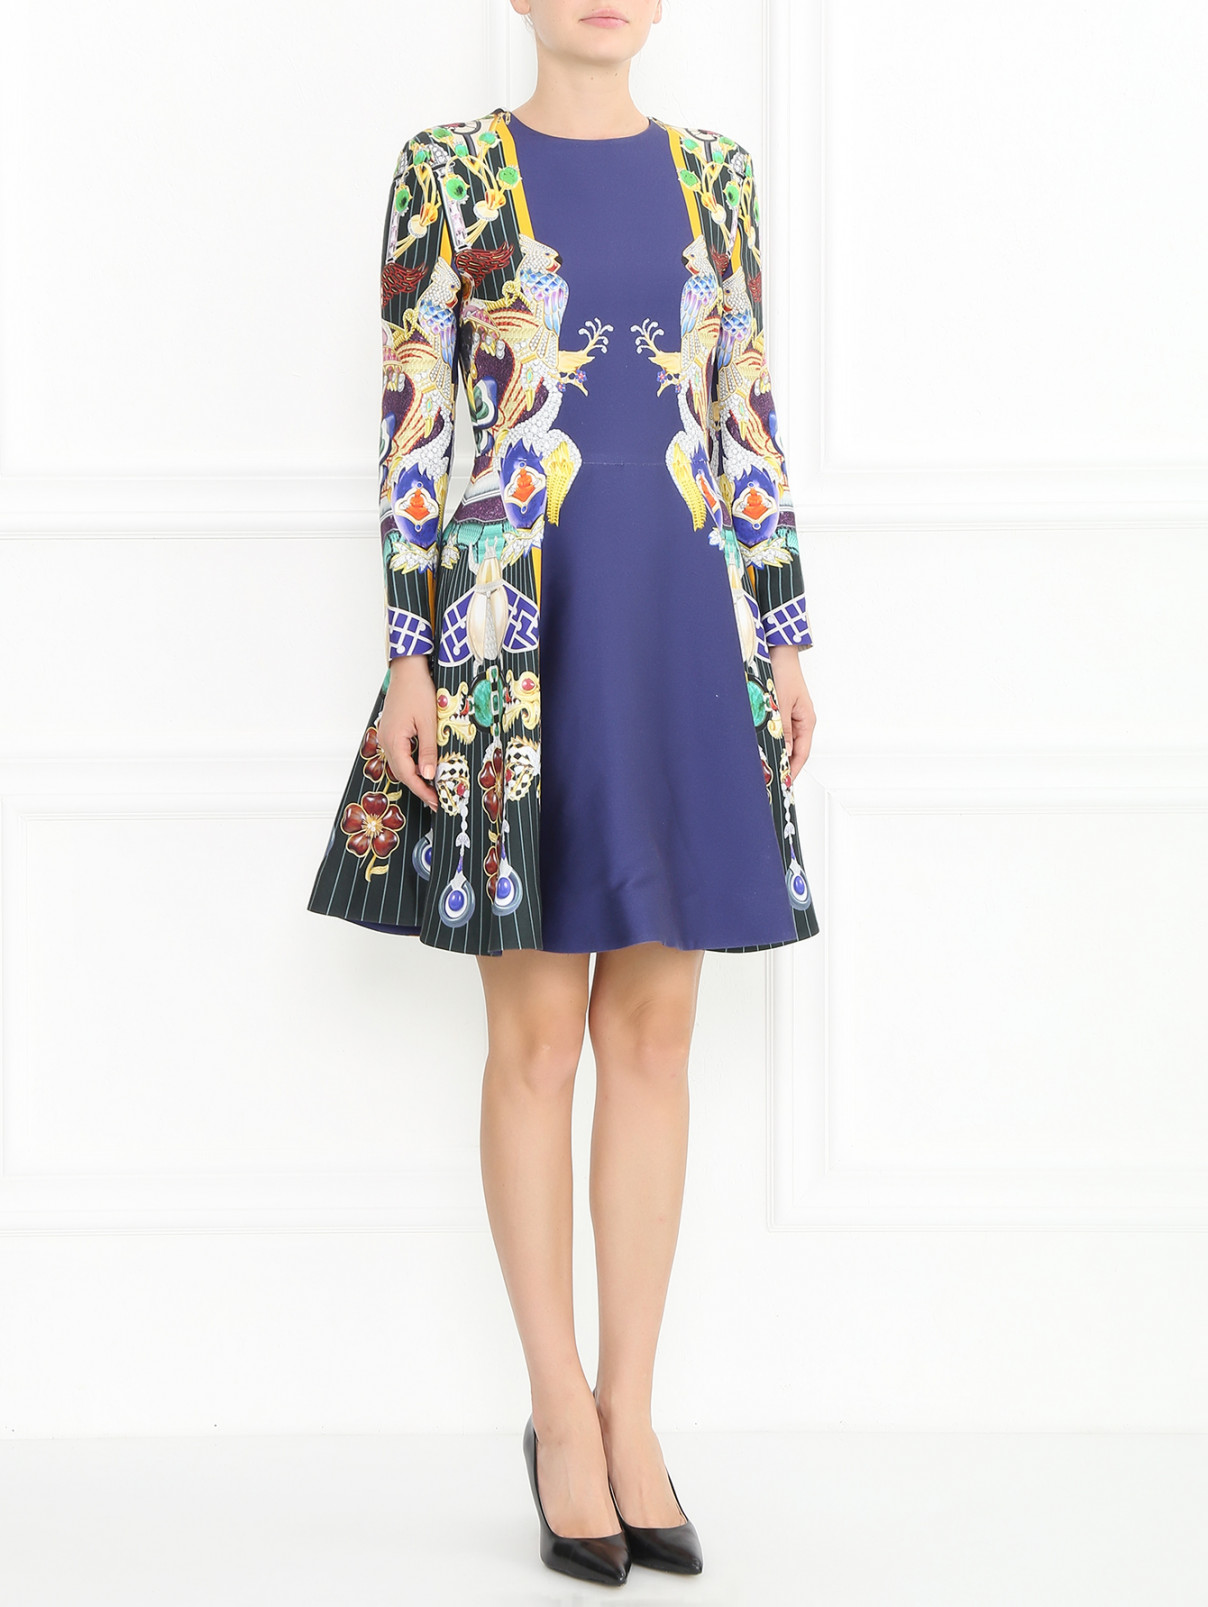 Платье-футляр с узором Mary Katrantzou  –  Модель Общий вид  – Цвет:  Узор